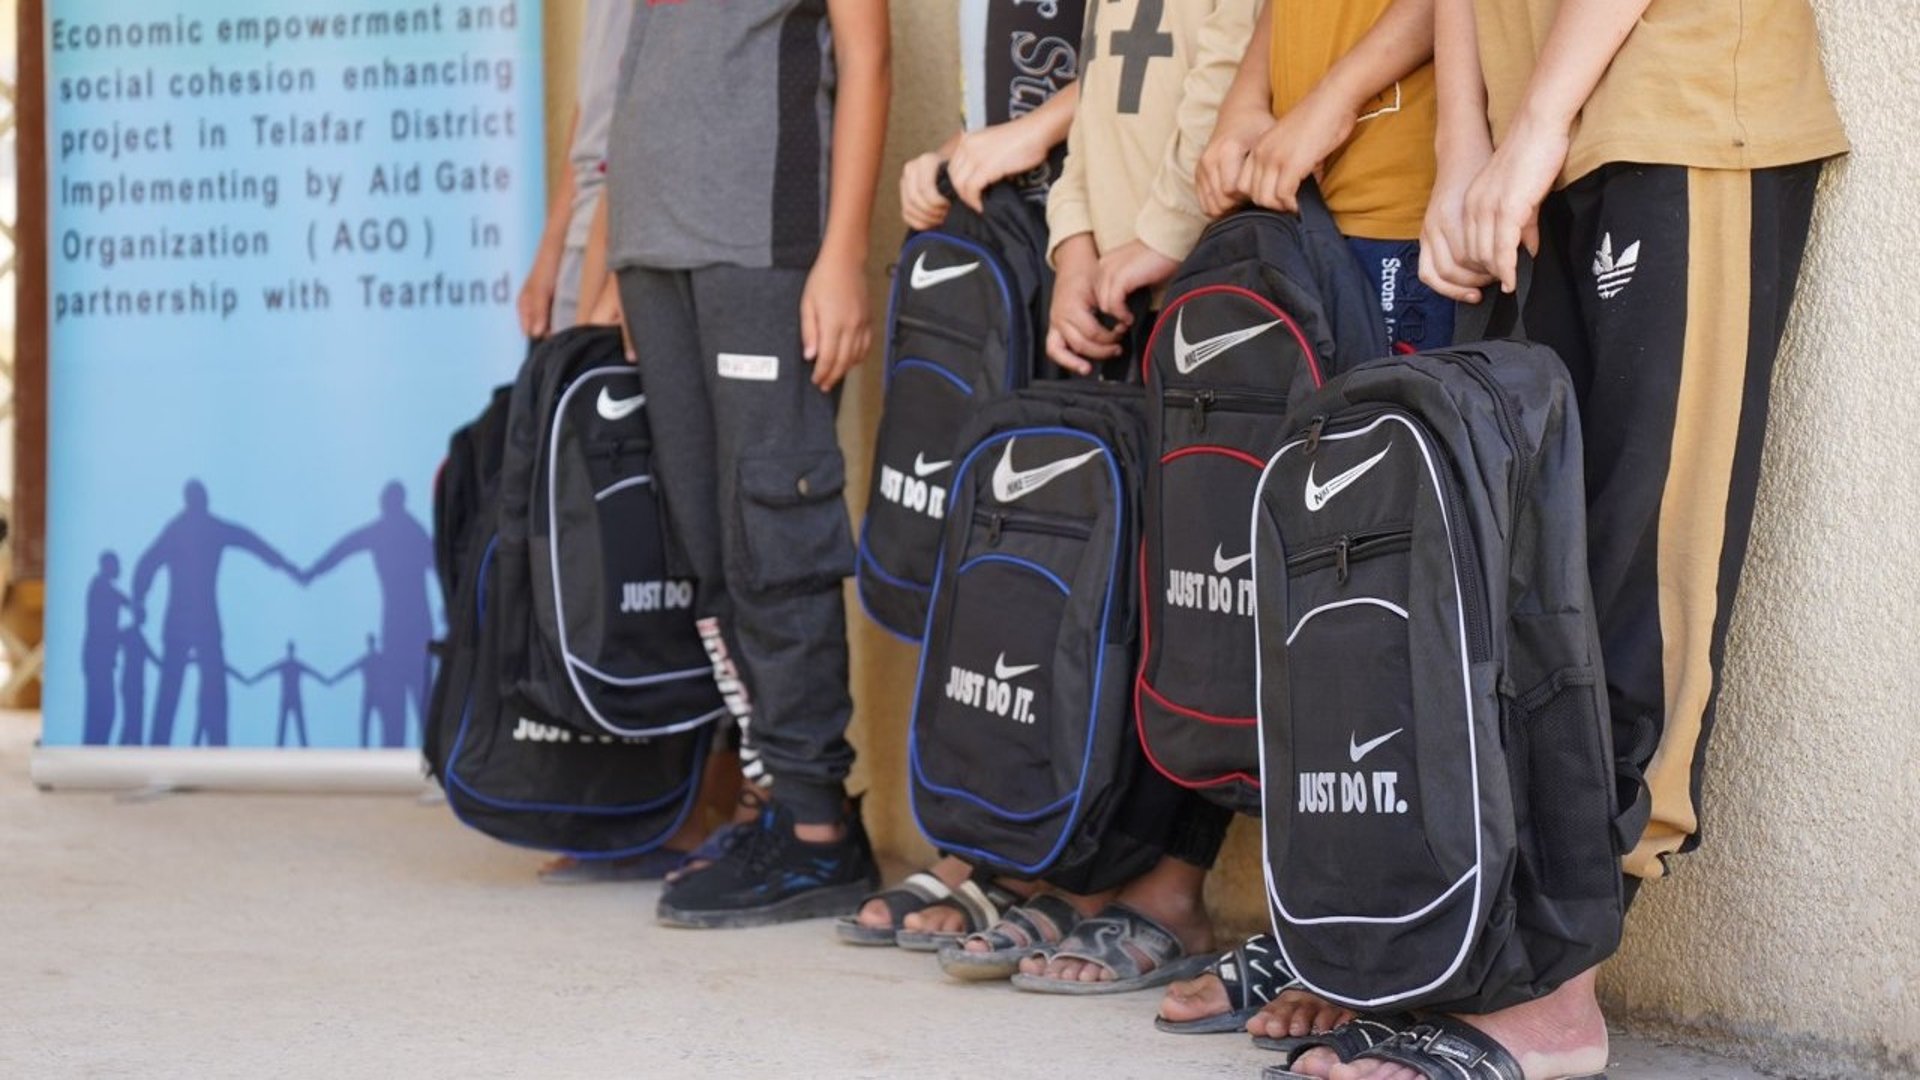 فرق تطوعية توزع حقائب مدرسية وقرطاسية للتلاميذ الأيتام في مدارس تلعفر (صور)